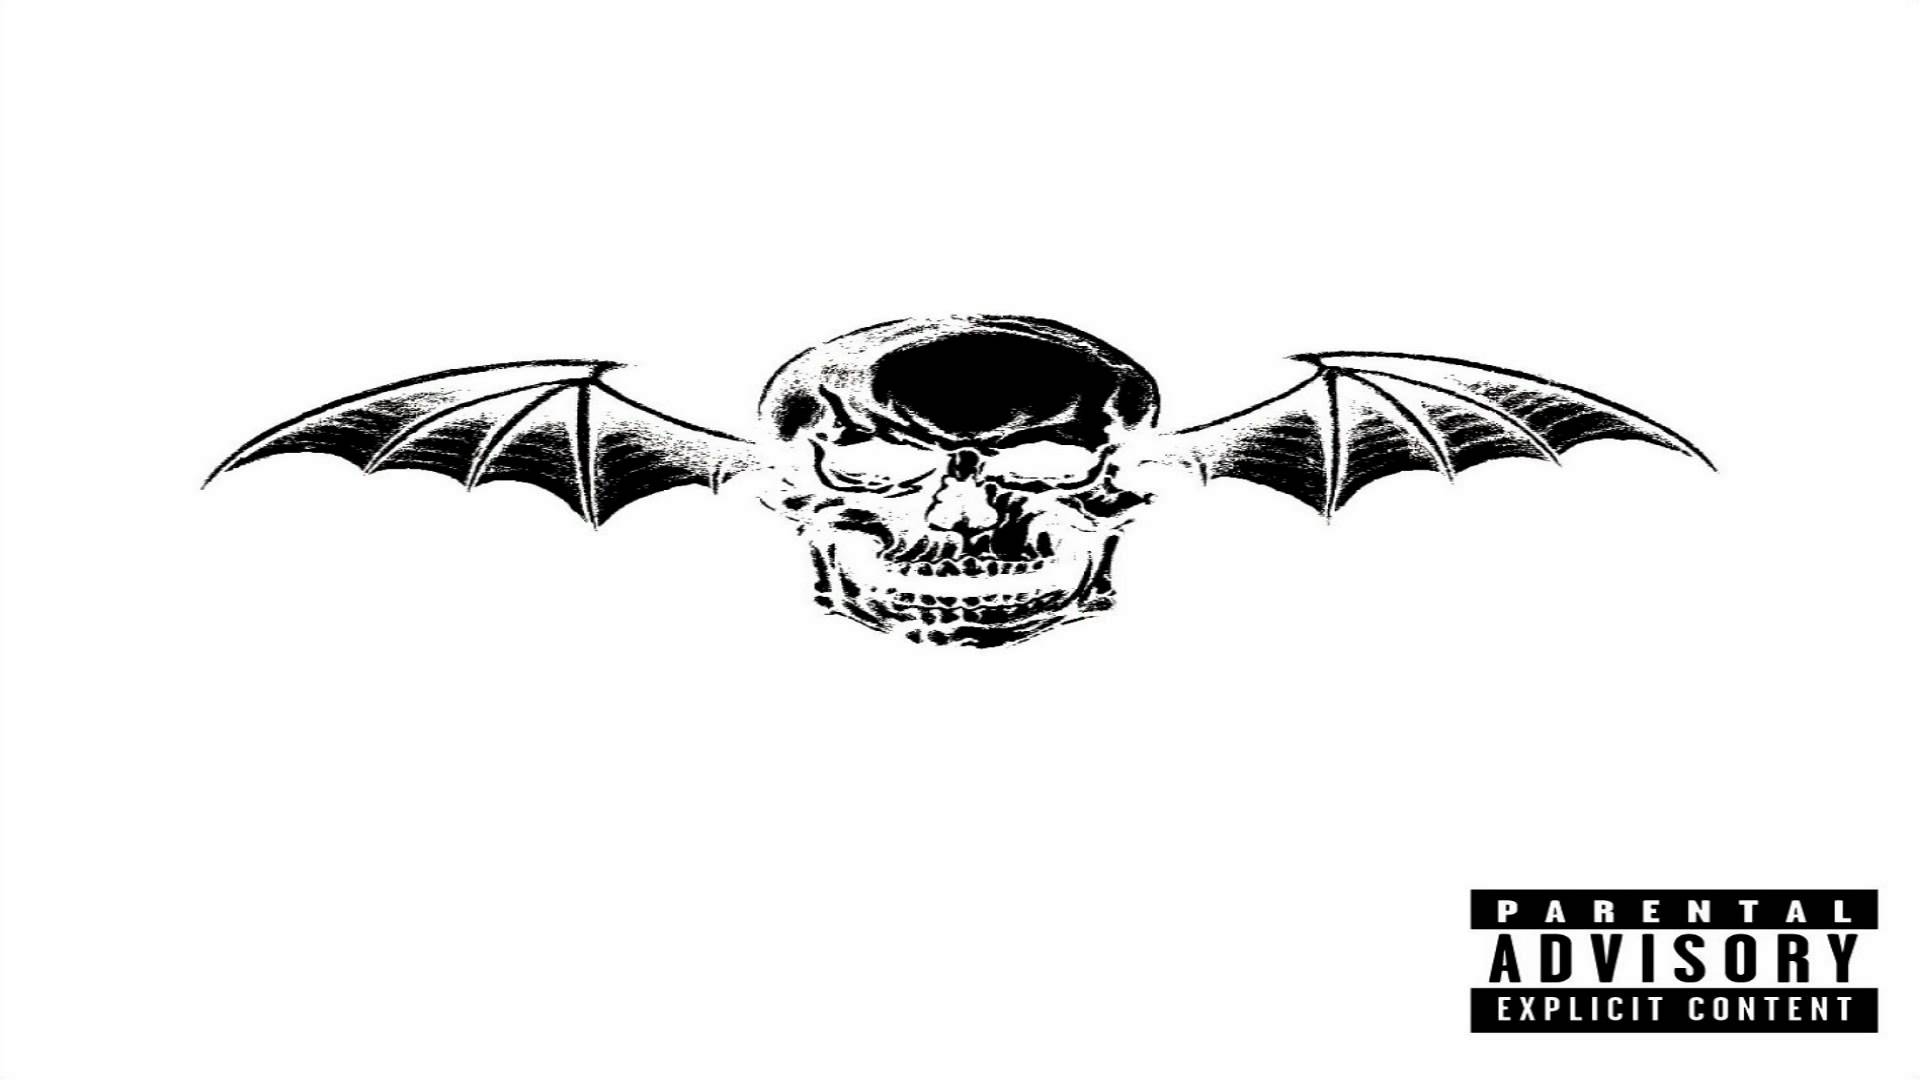 Afterlife Lyrics - Avenged Sevenfold, PDF, Afterlife